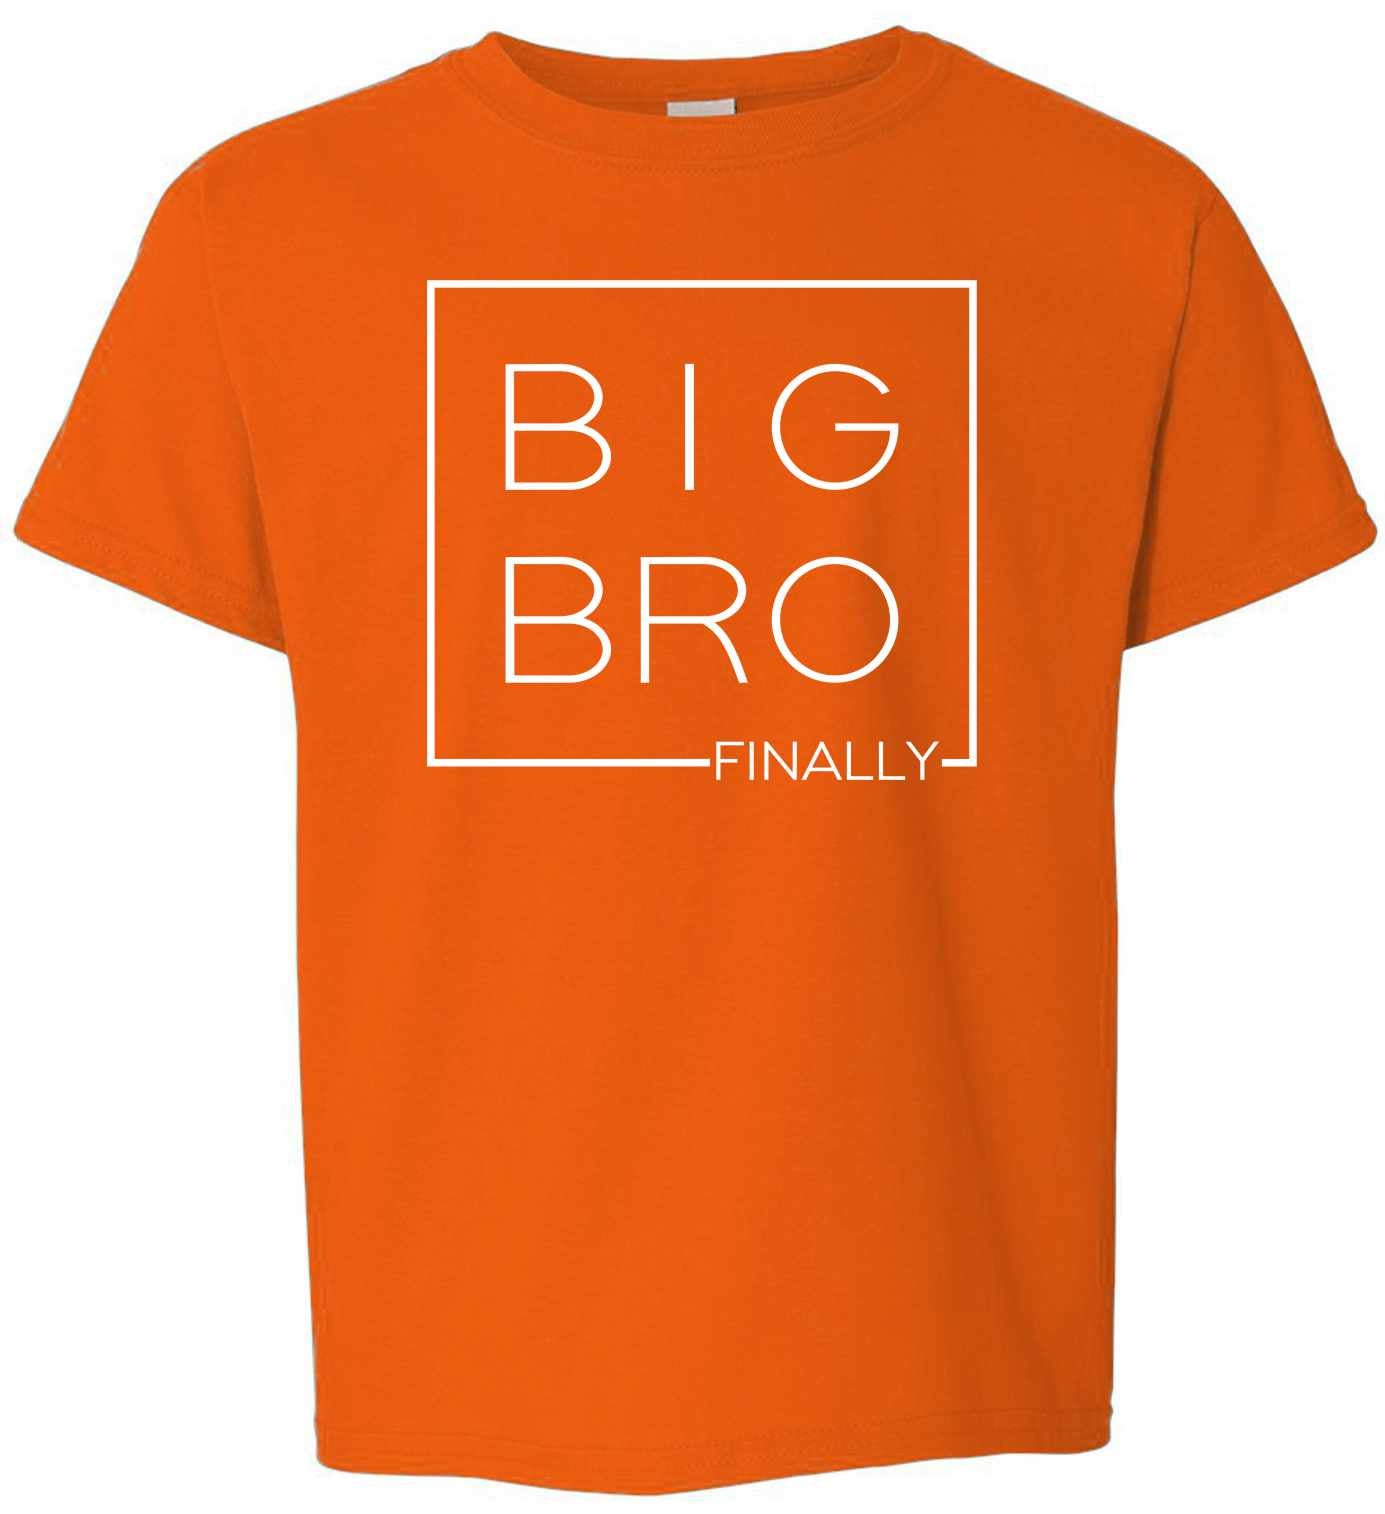 Big Bro Finally- Big Brother Boxed on Kids T-Shirt